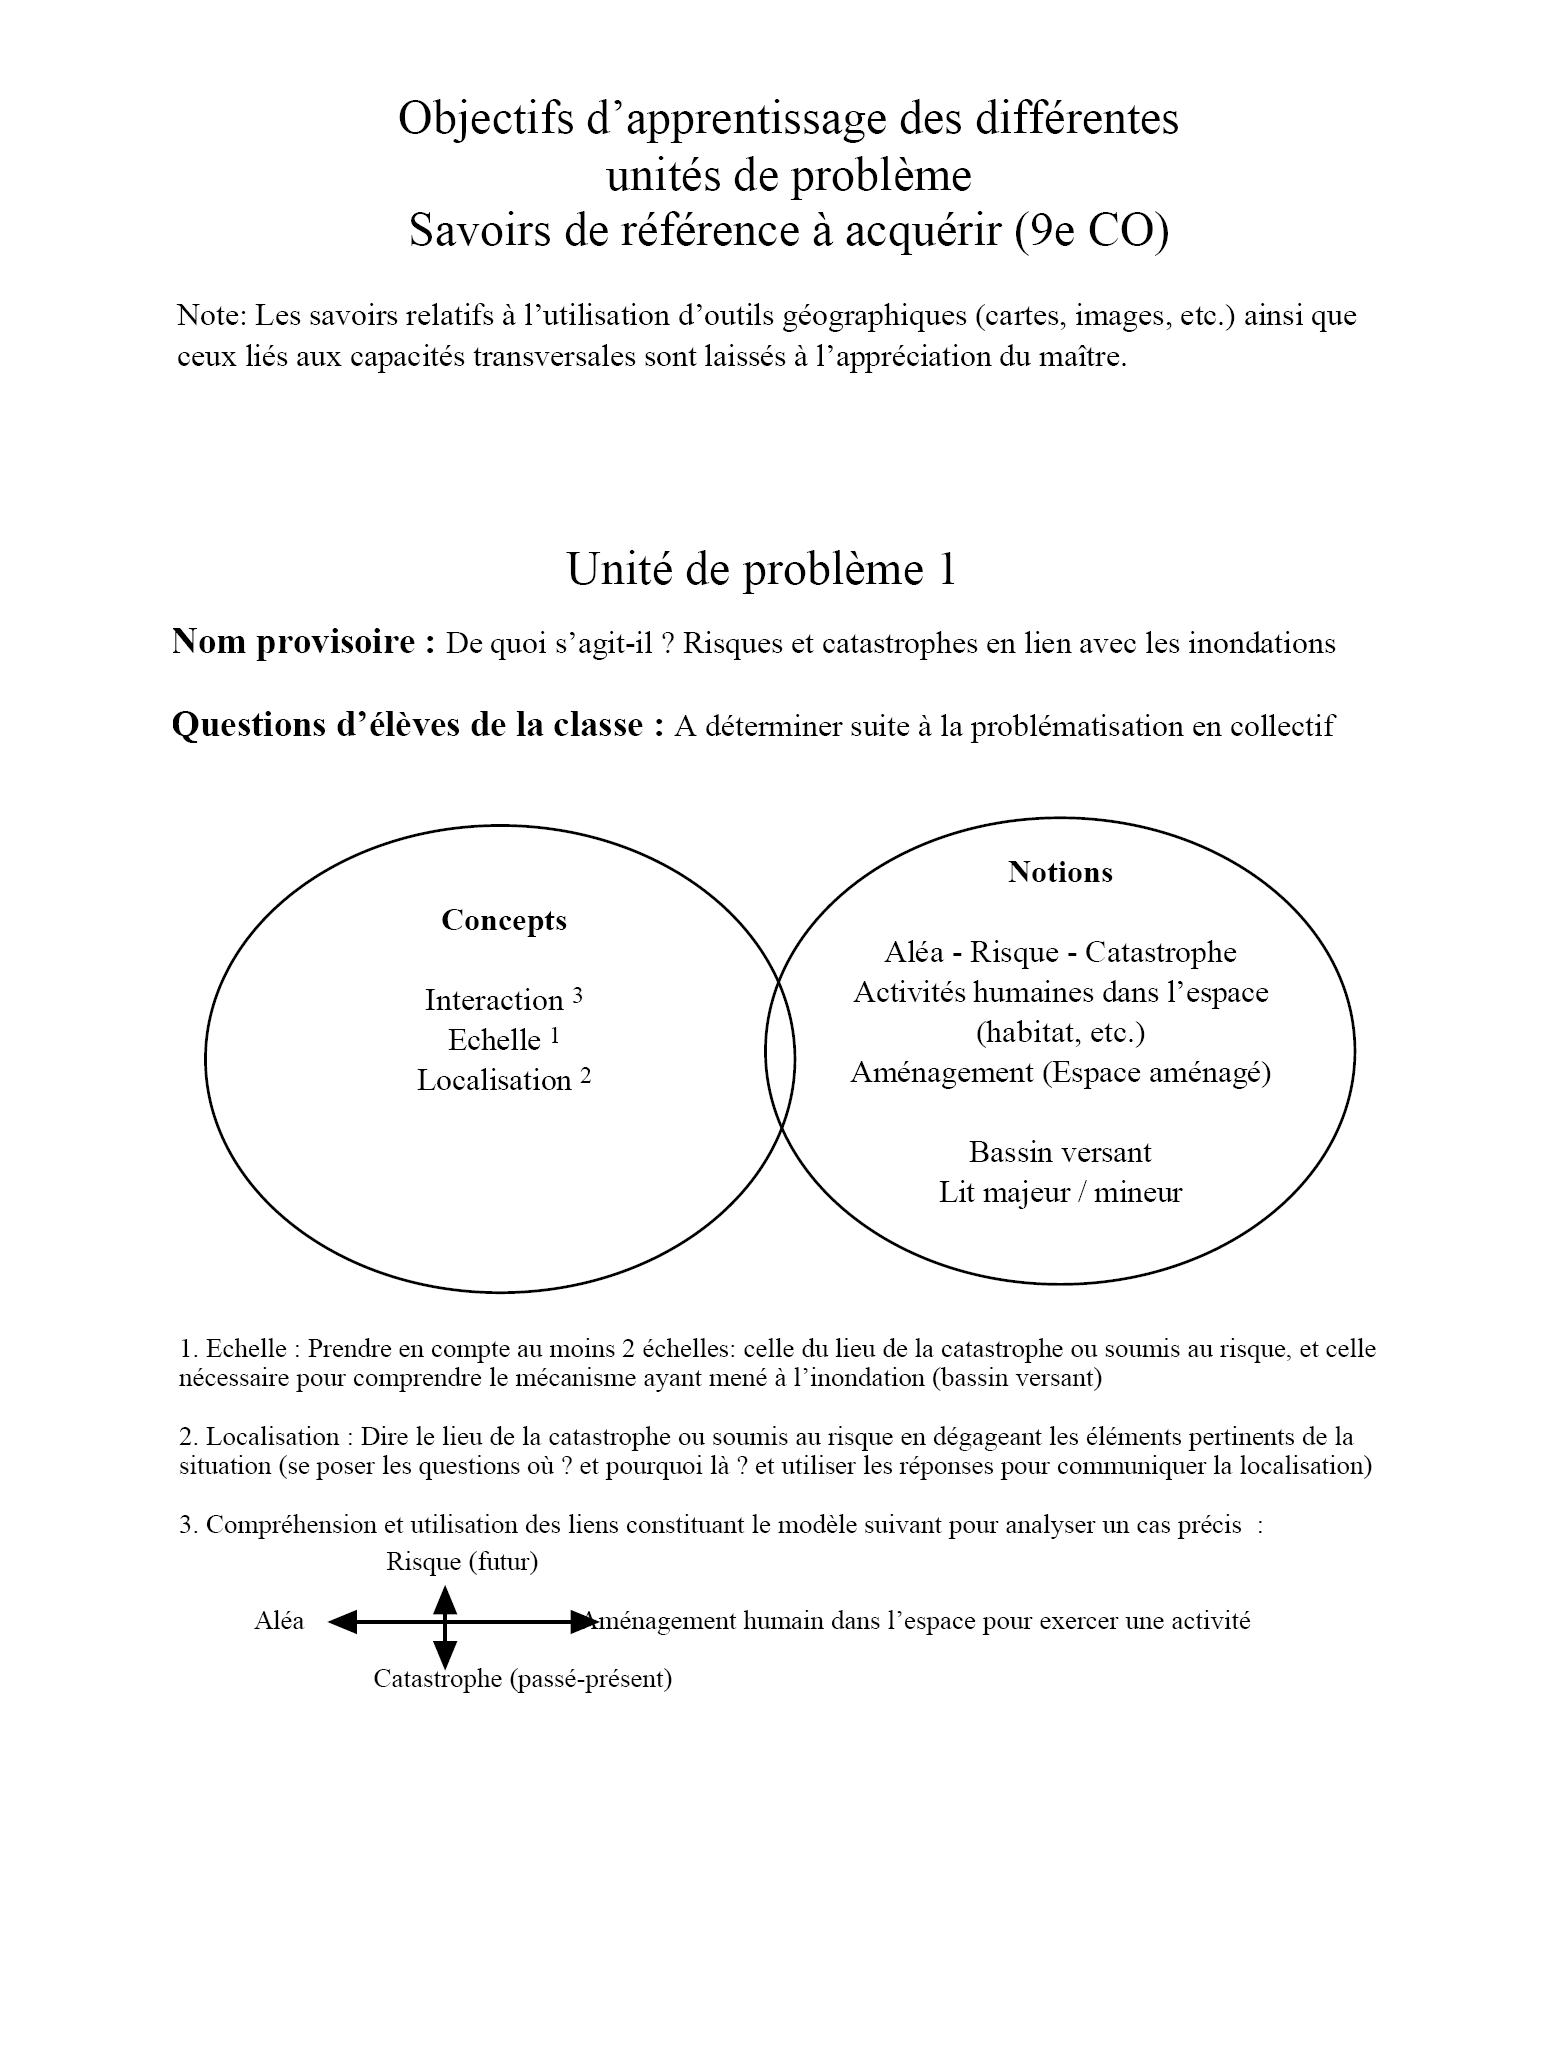 Annexe 4 : Objectifs d apprentissage des différentes unités de problème et savoirs de